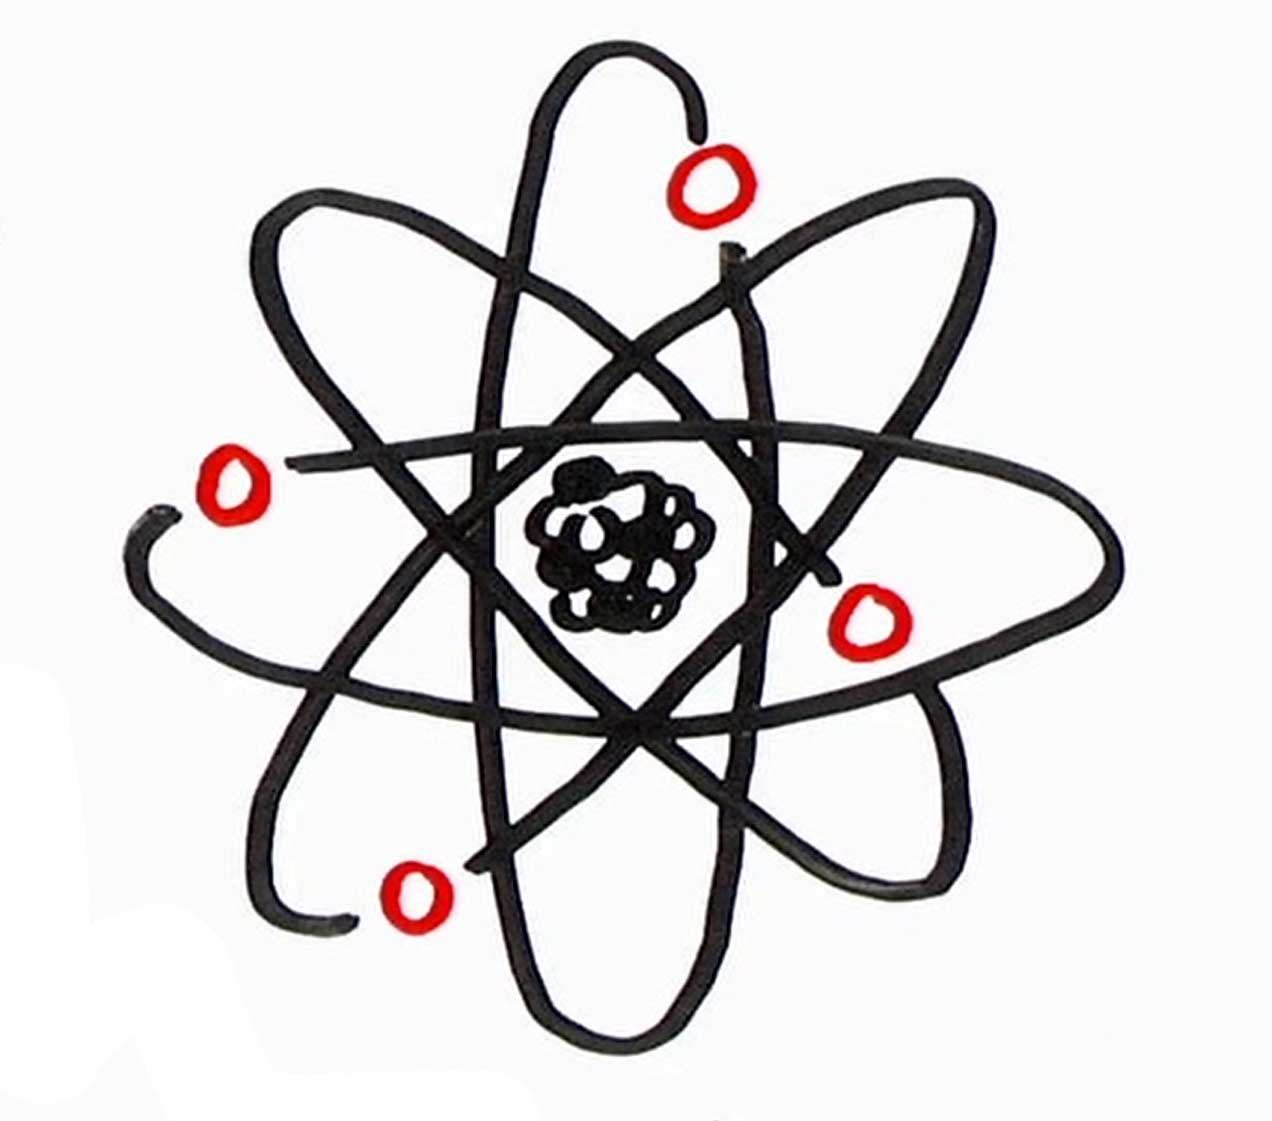 An cartoon-like symbol for nuclear power.